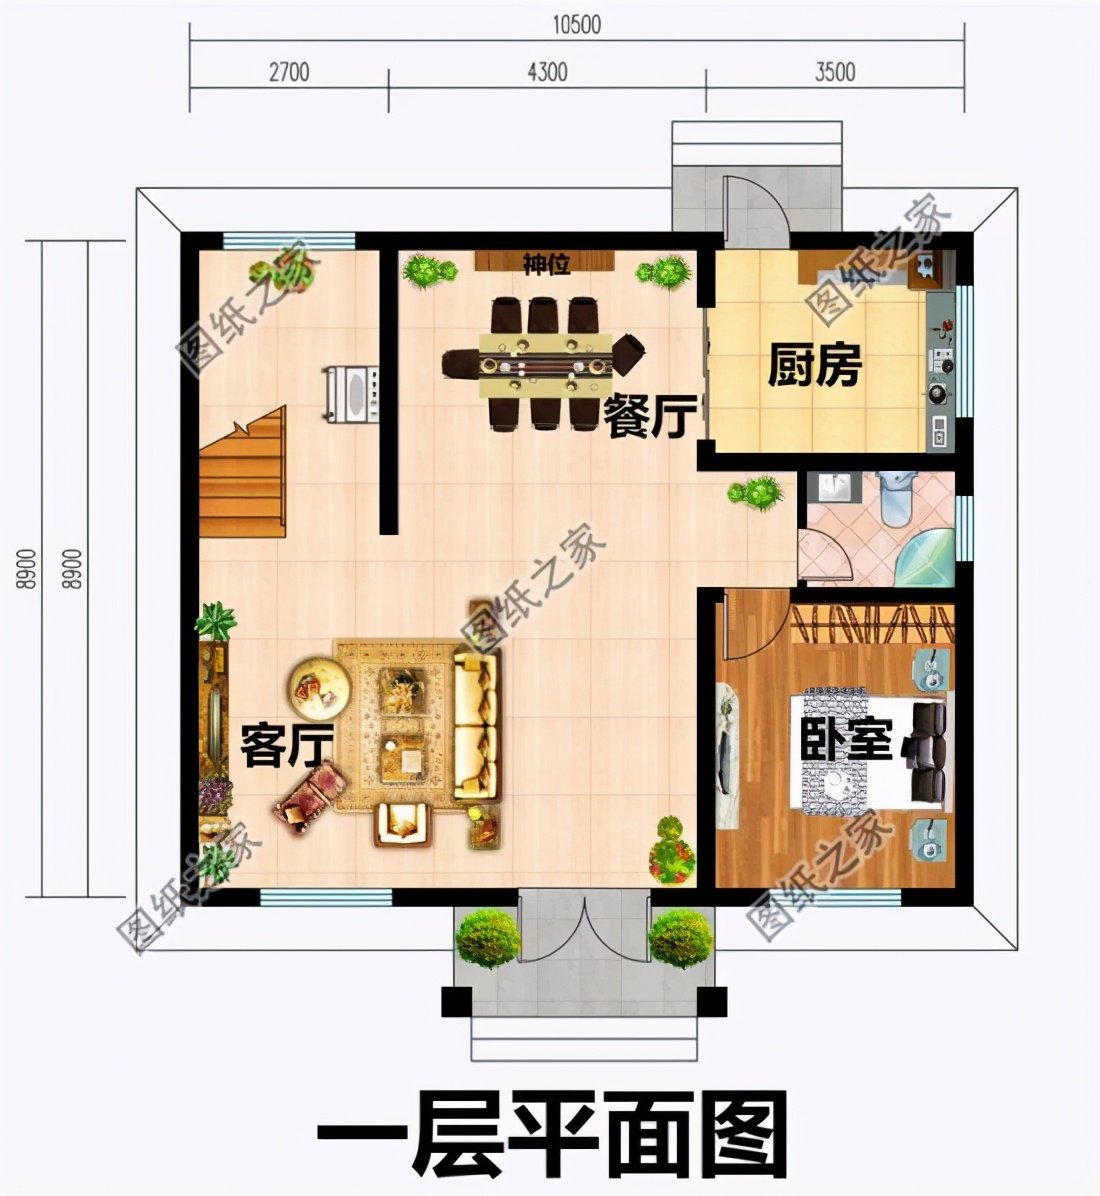 百平内二层楼房设计图,小户型简单好看,农村建房理想户型